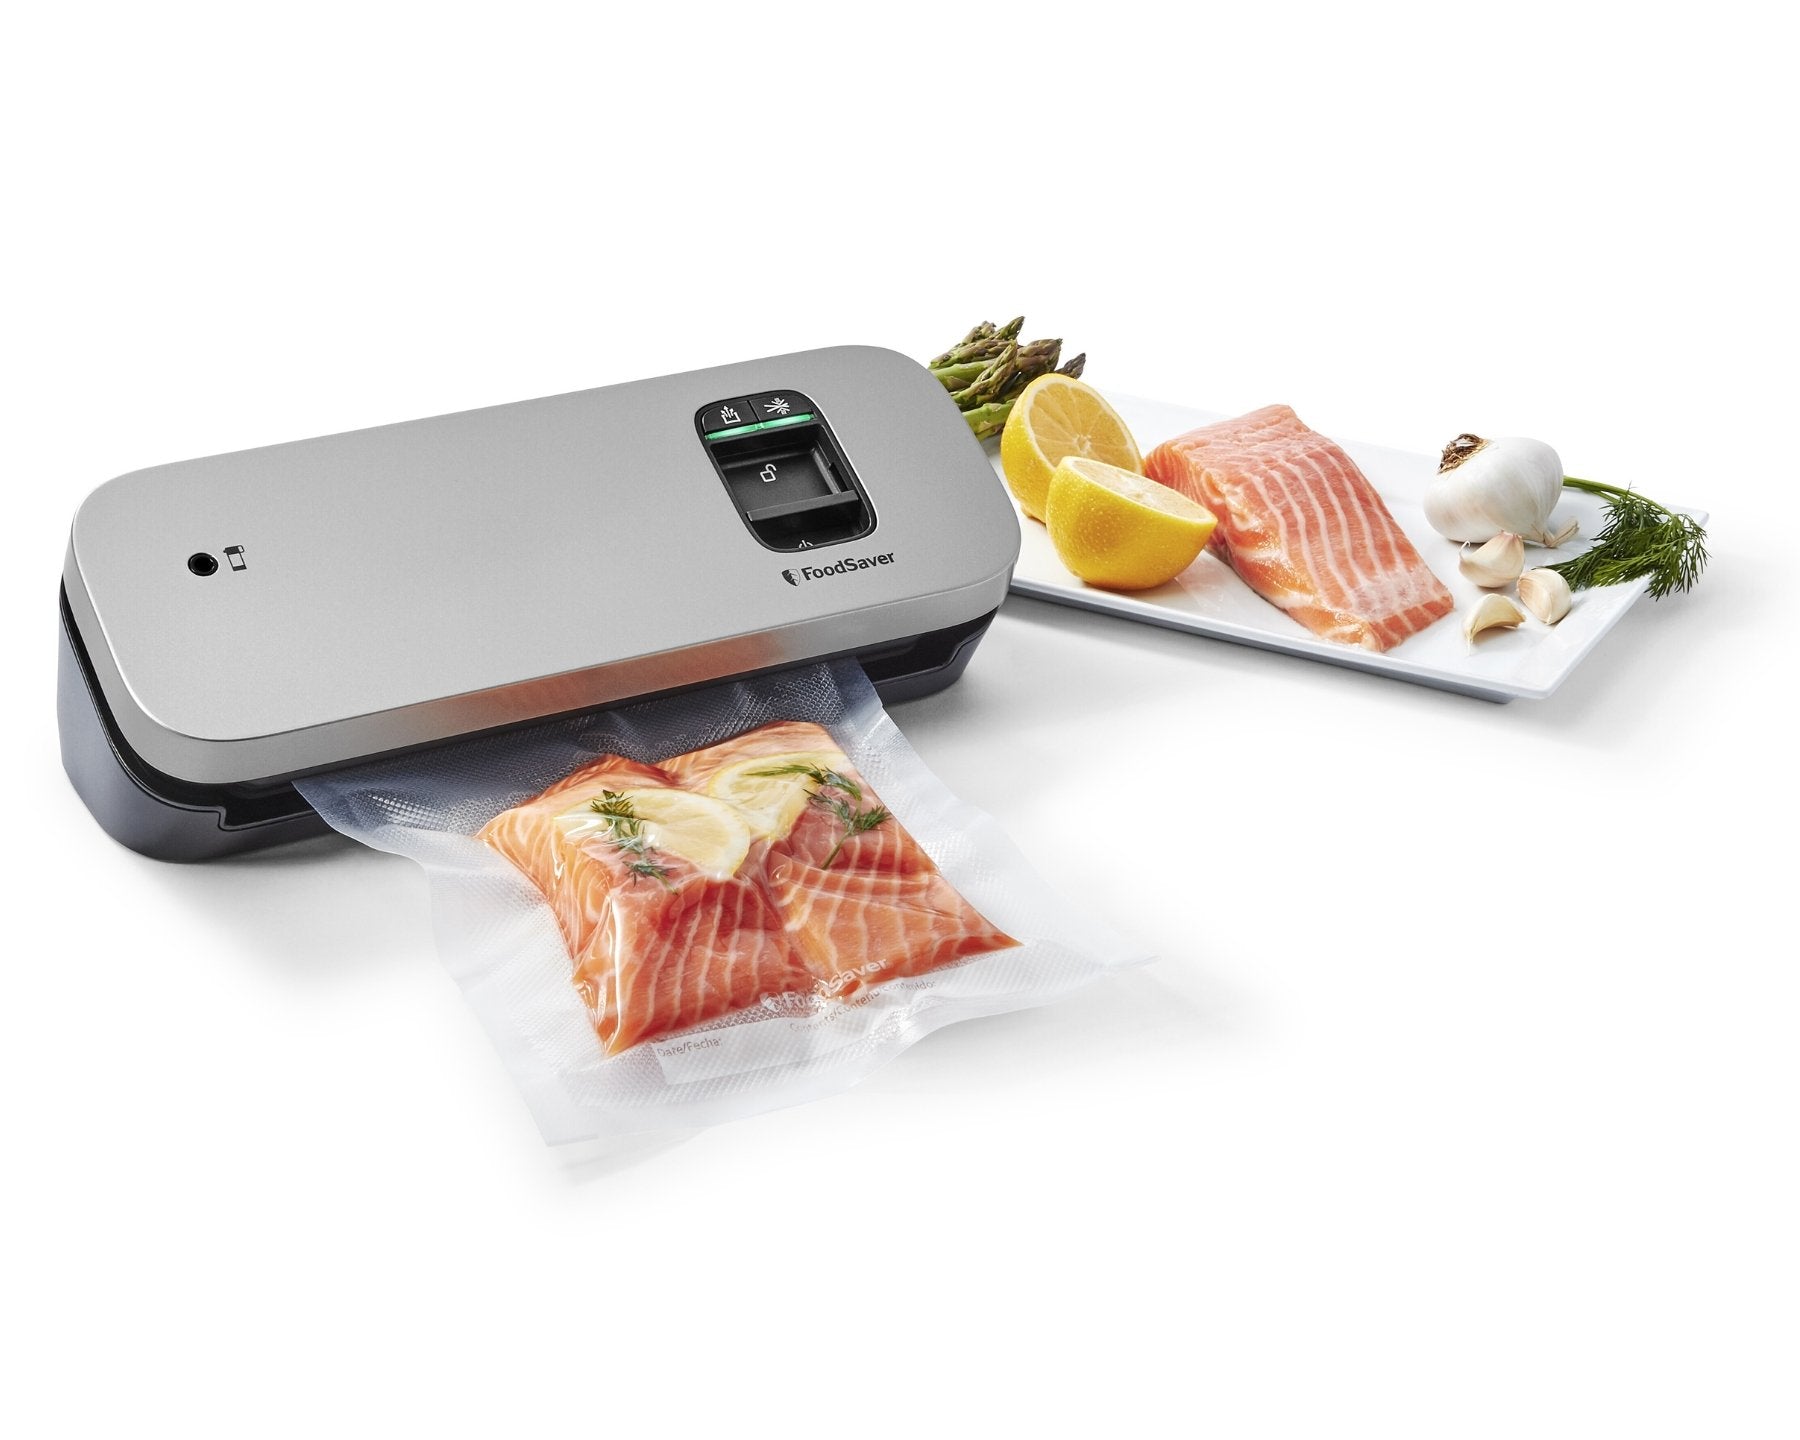 Foodsaver, Vakuumiergerät VS1190X - kitchen-more.ch, kostenloser Versand in der ganzen Schweiz